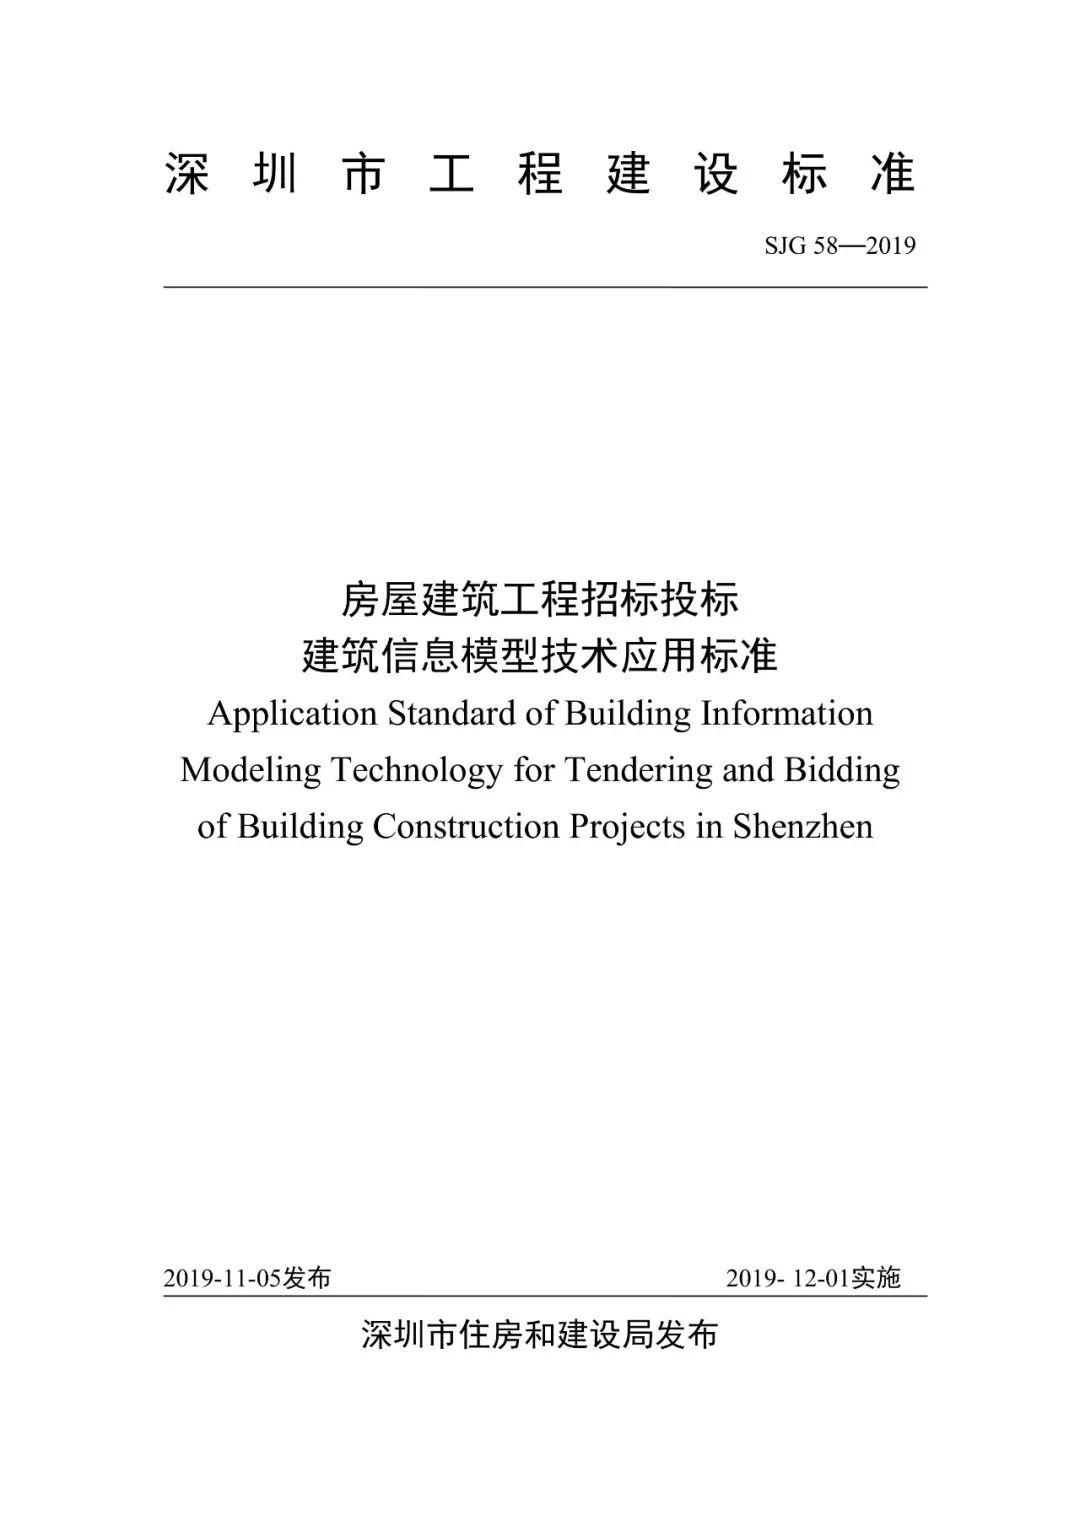 深圳住建局率先印发《房屋建筑工程招标投标BIM技术应用标准》！